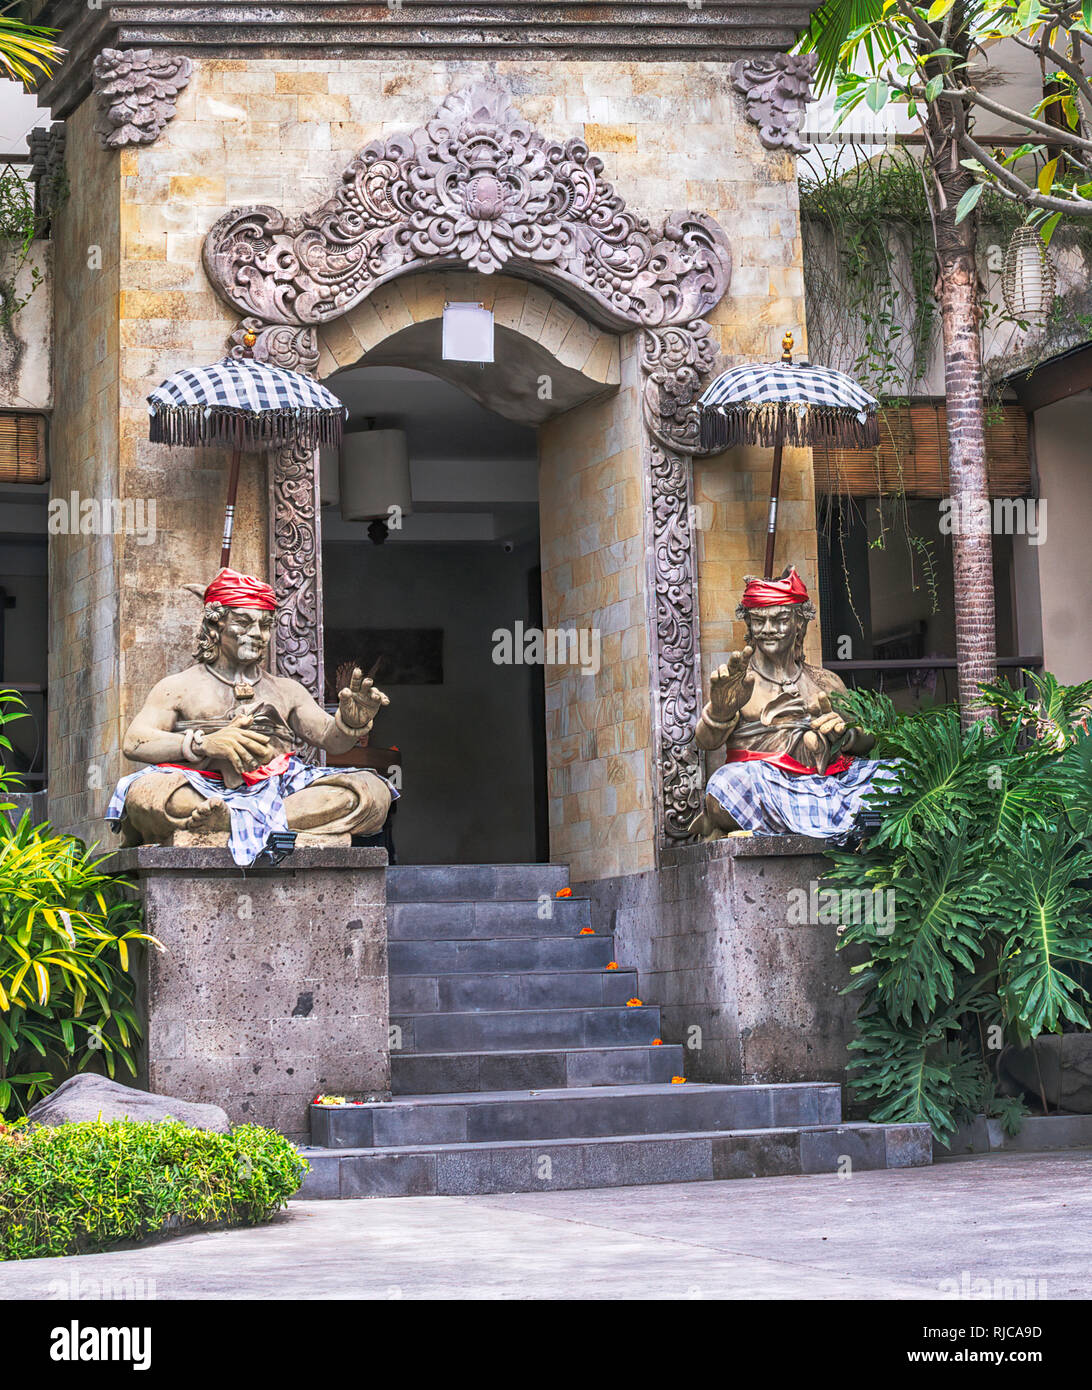 Temple facade, Bali, Indonesia Stock Photo